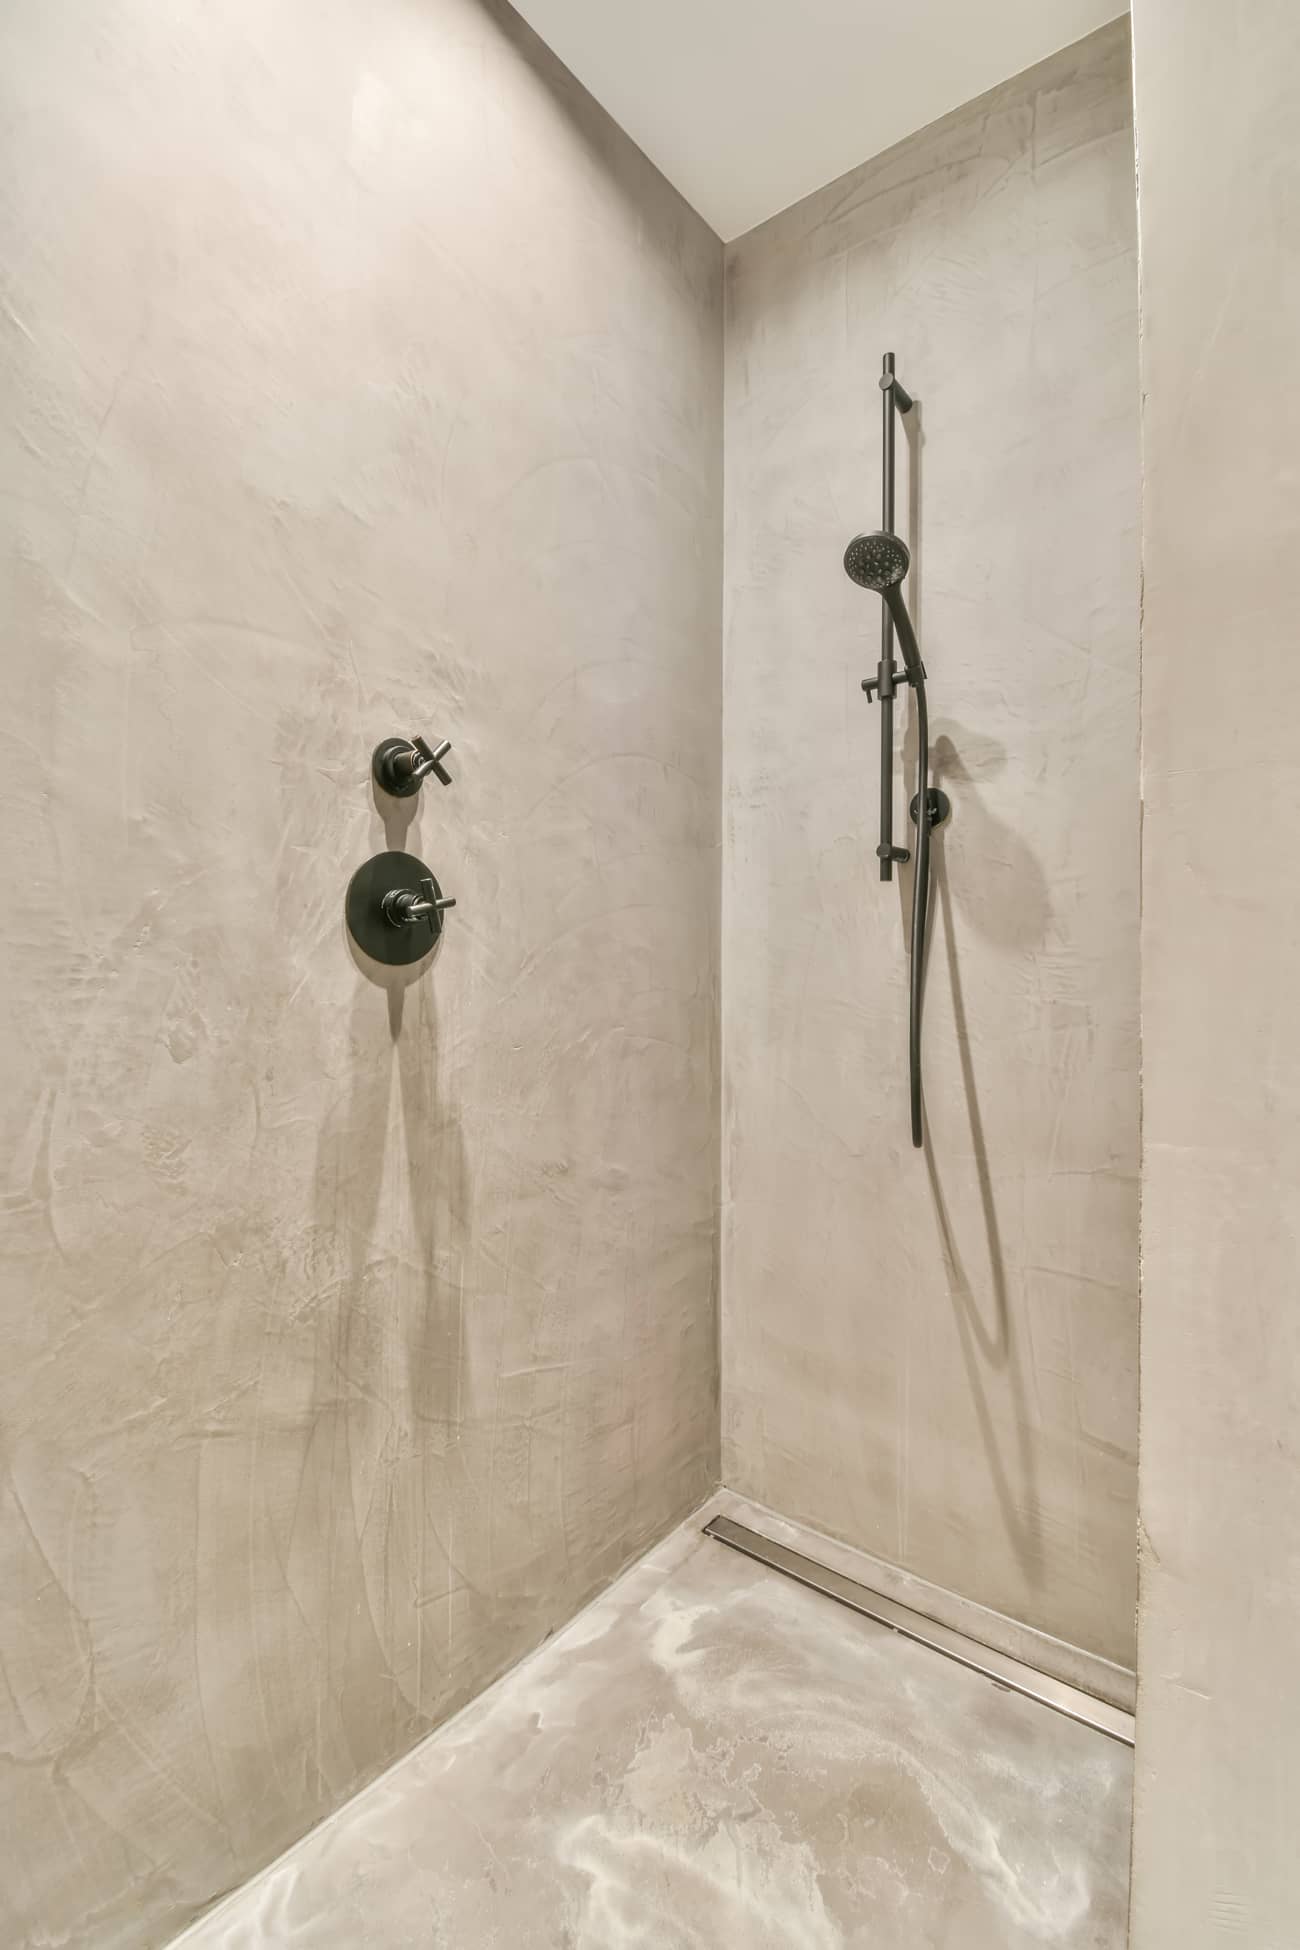 Felújított fürdőszoba mikrocement zuhannyal a padlón és a falakon